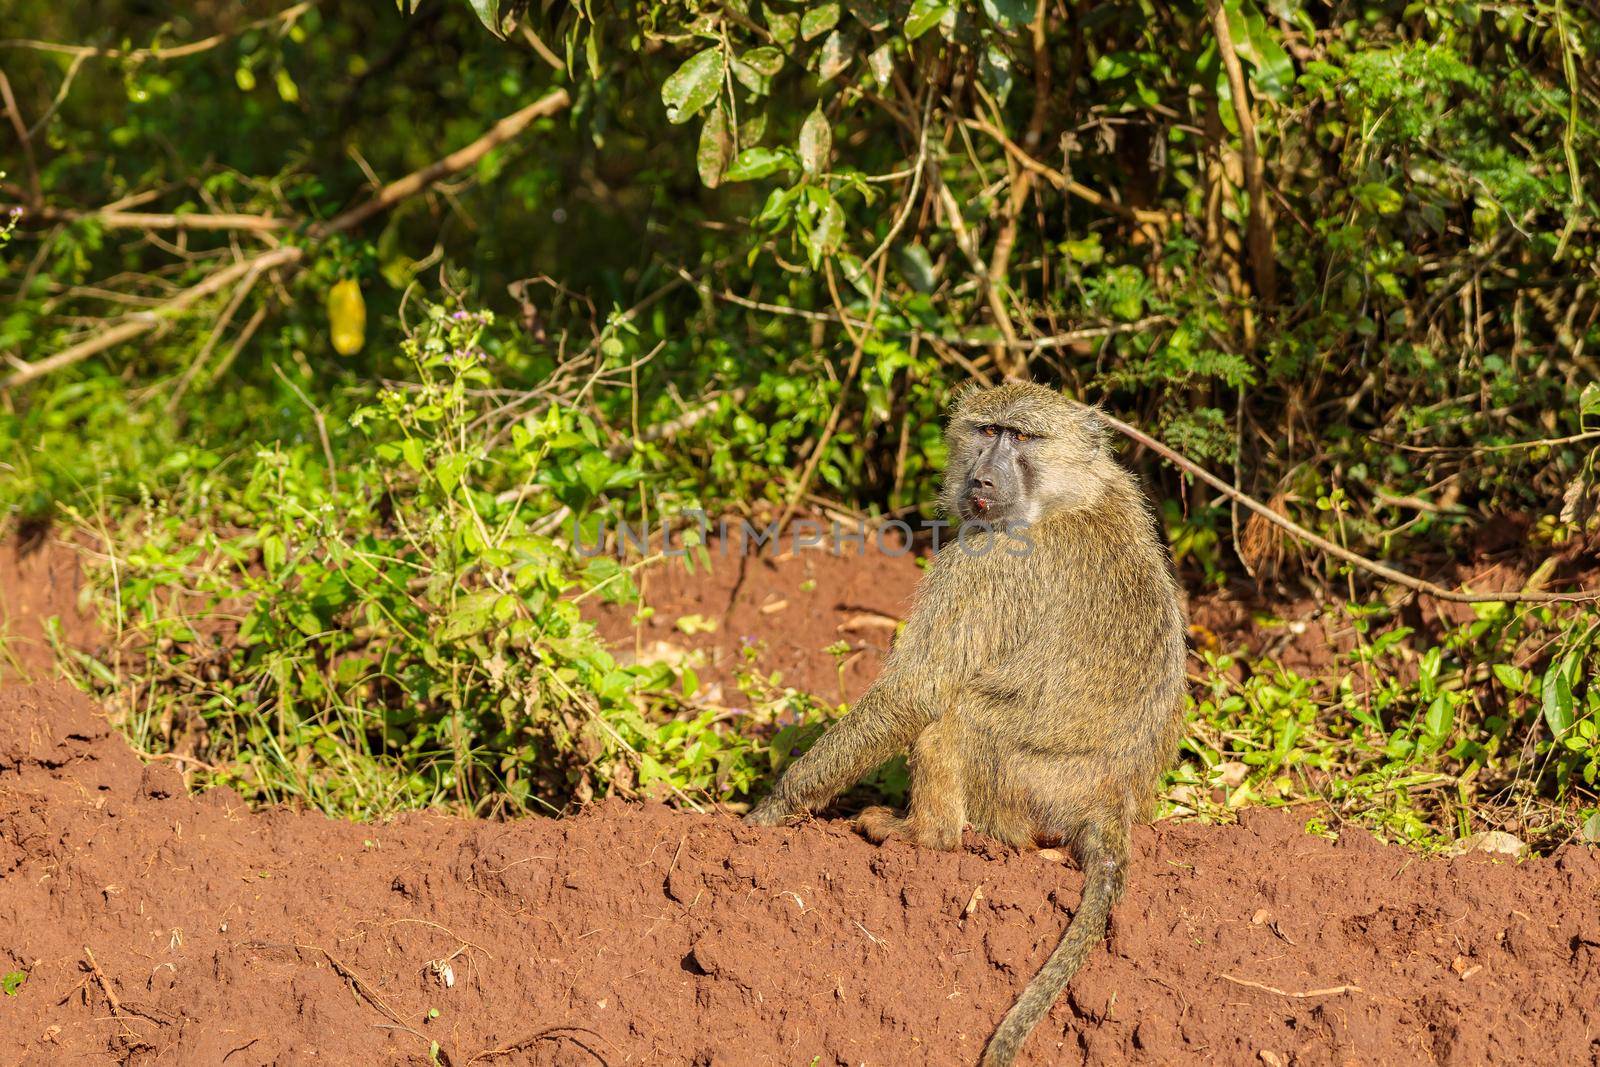 One monkey on grassland in Africa, copy space by Yaroslav_astakhov